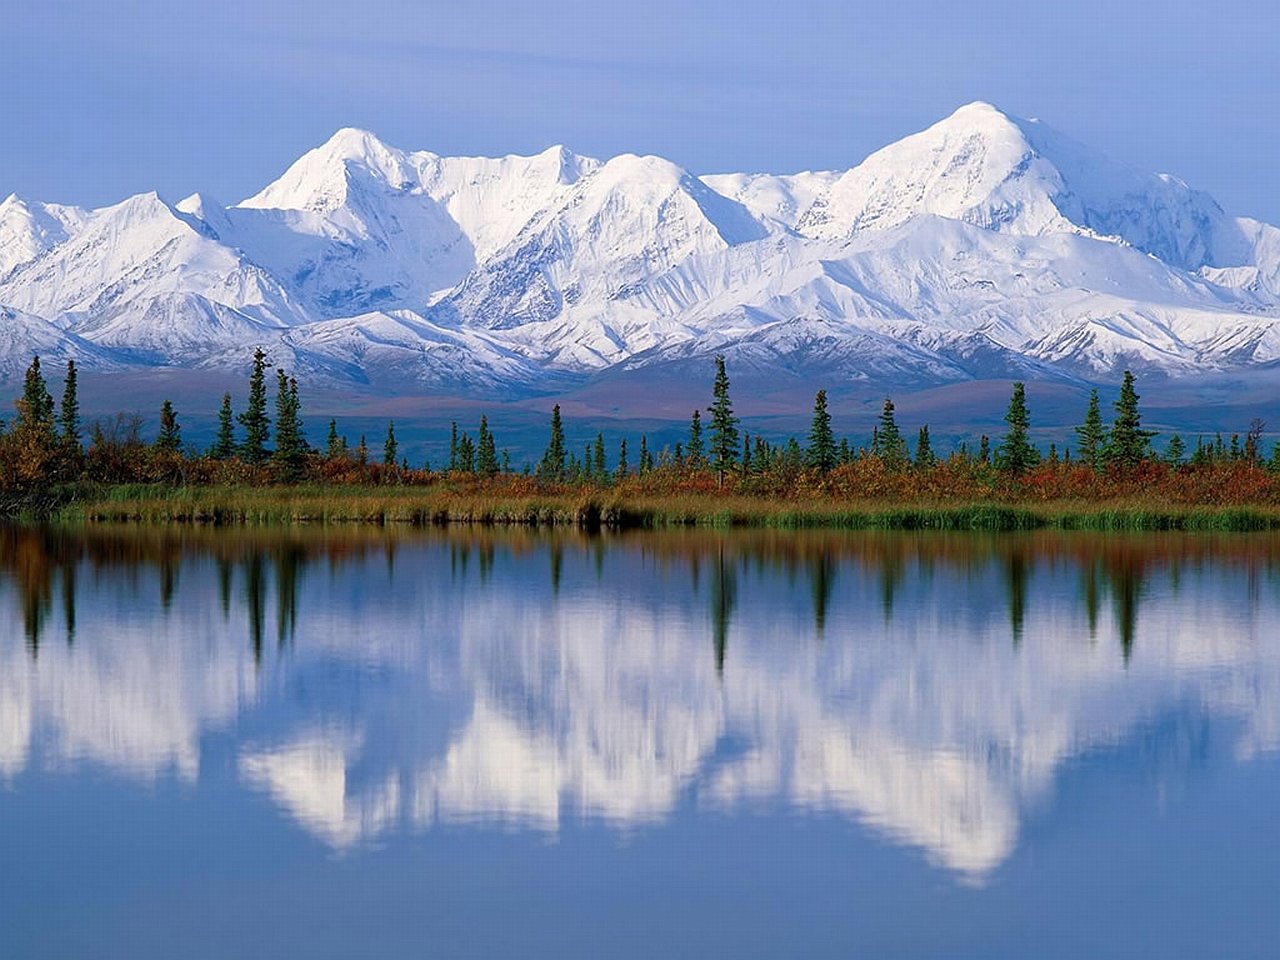 Большое разнообразие природы северной америки. Национальный парк Денали Аляска. Северная Америка Аляска. Национальный парк Денали, штат Аляска. Кордильеры Аляски.